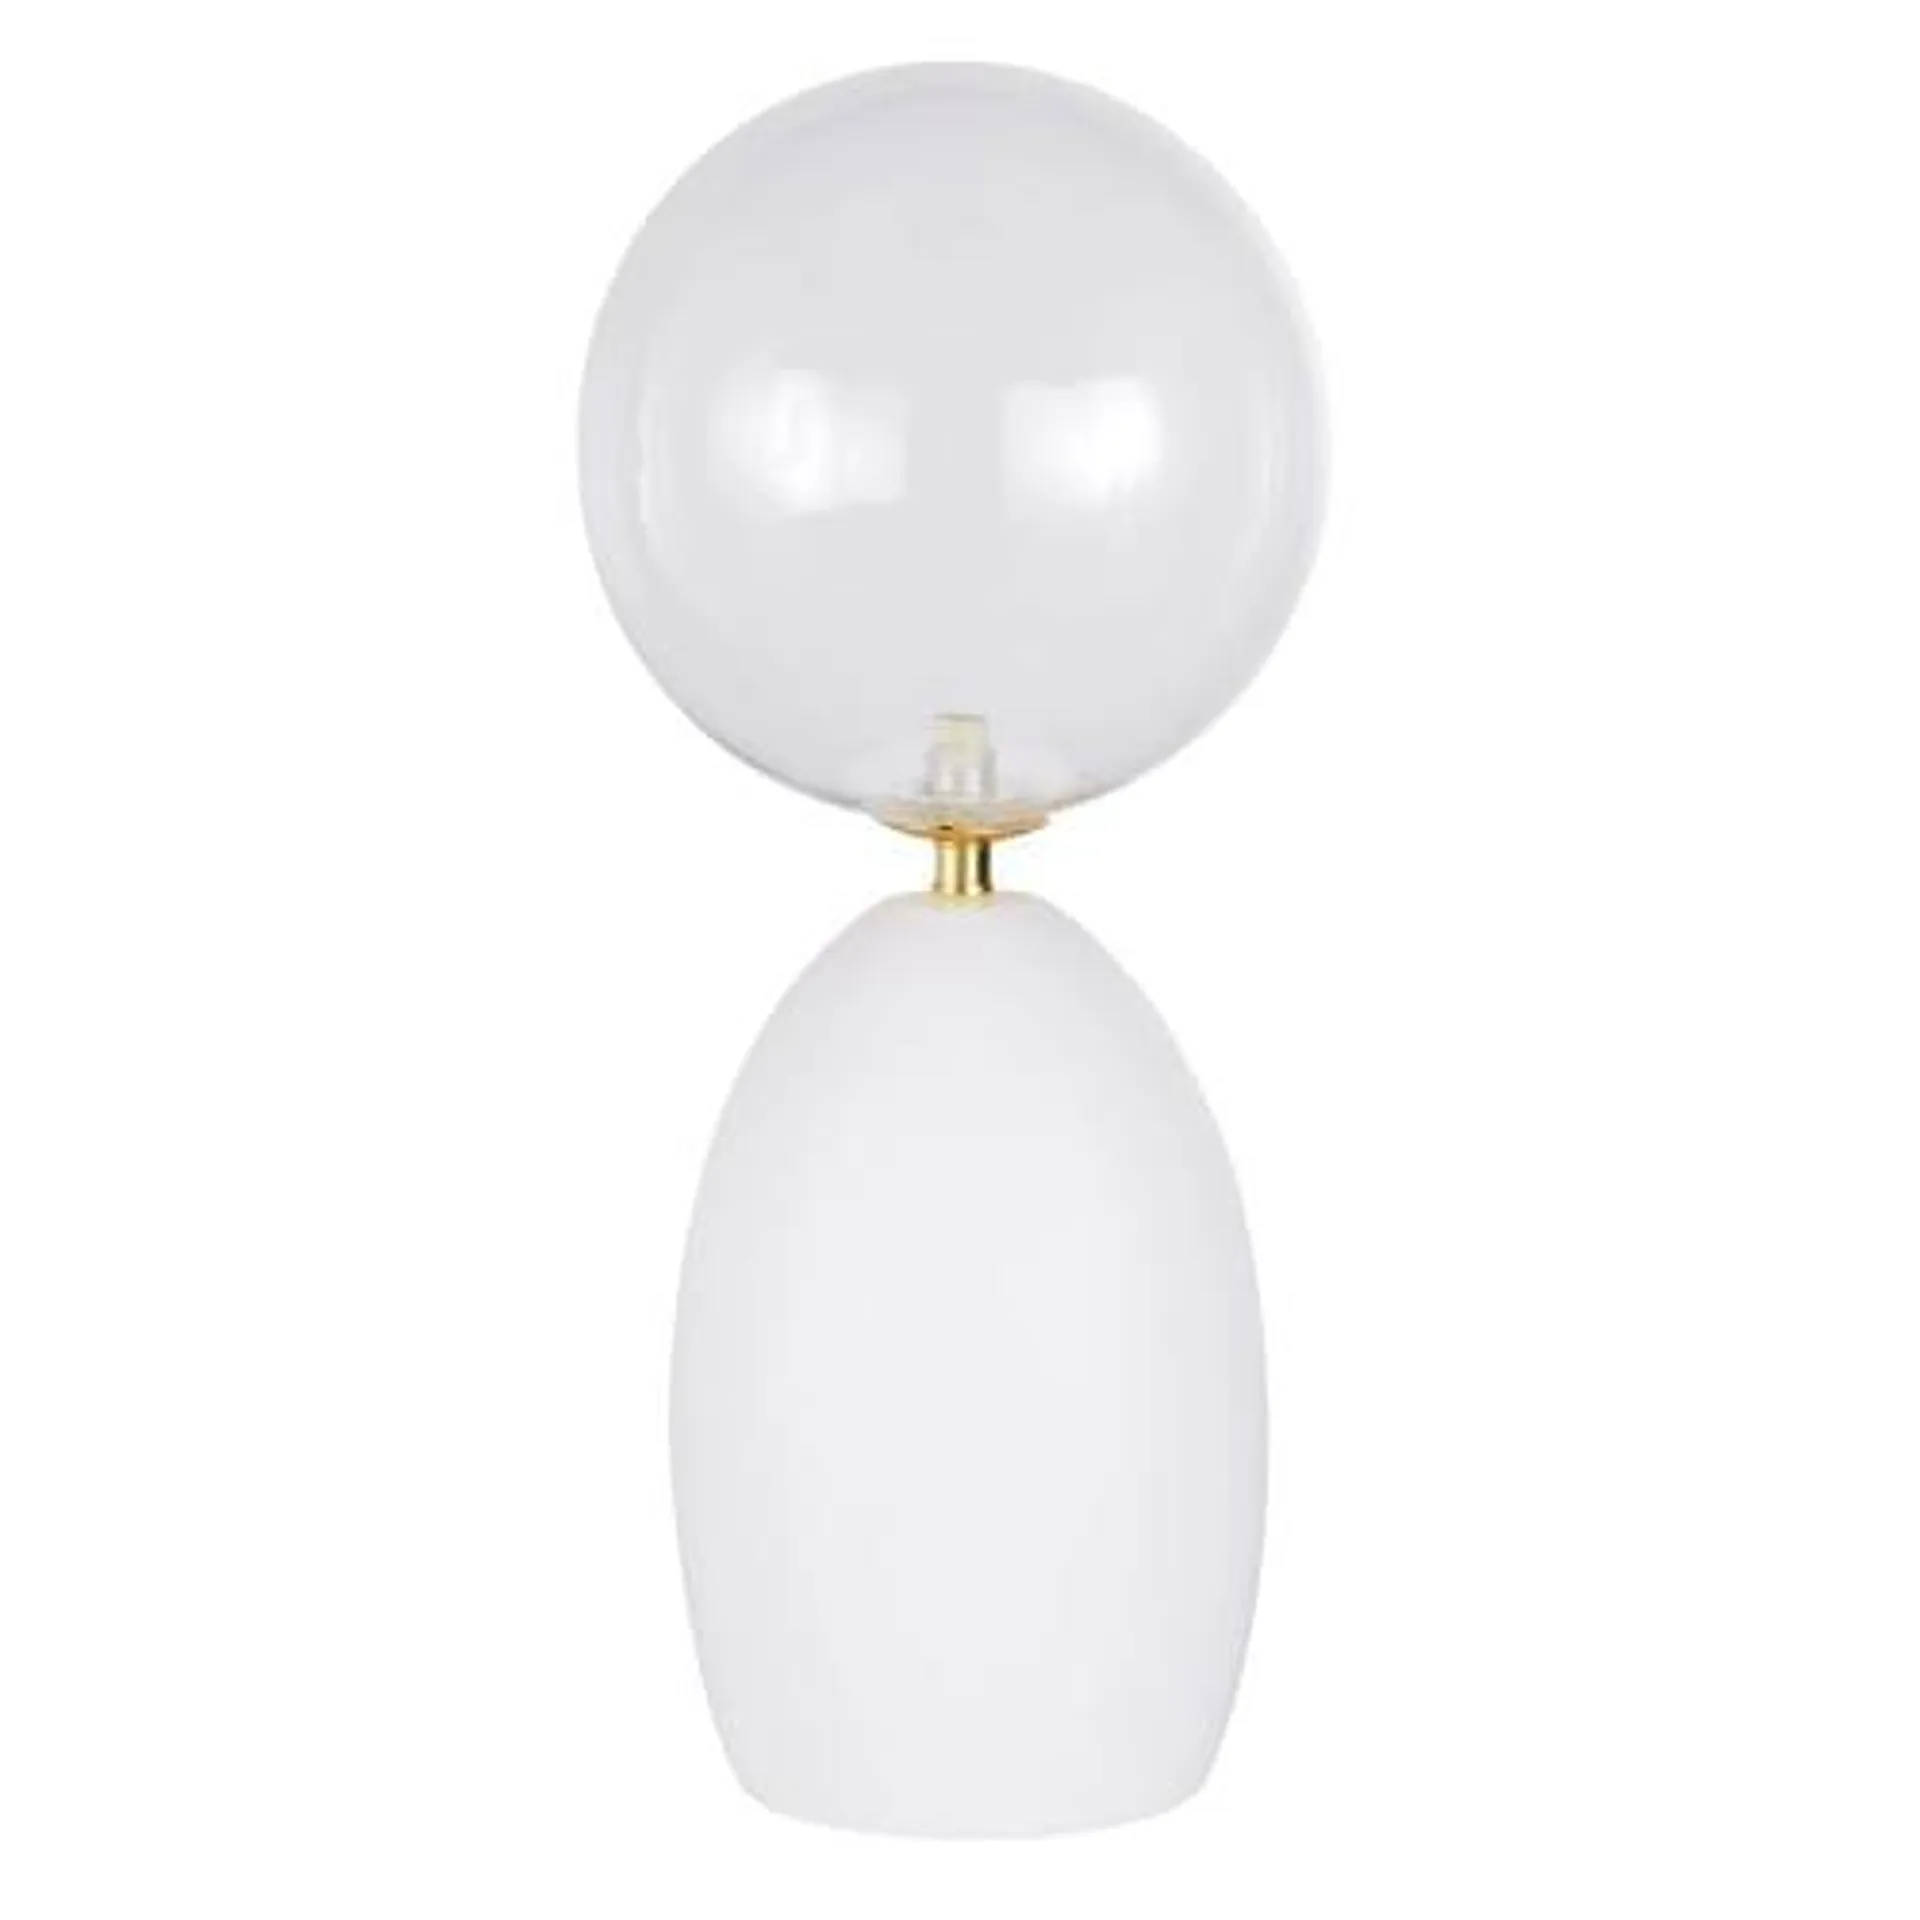 Lampada in ceramica bianca e dorata con globo in vetro alt. 58 cm